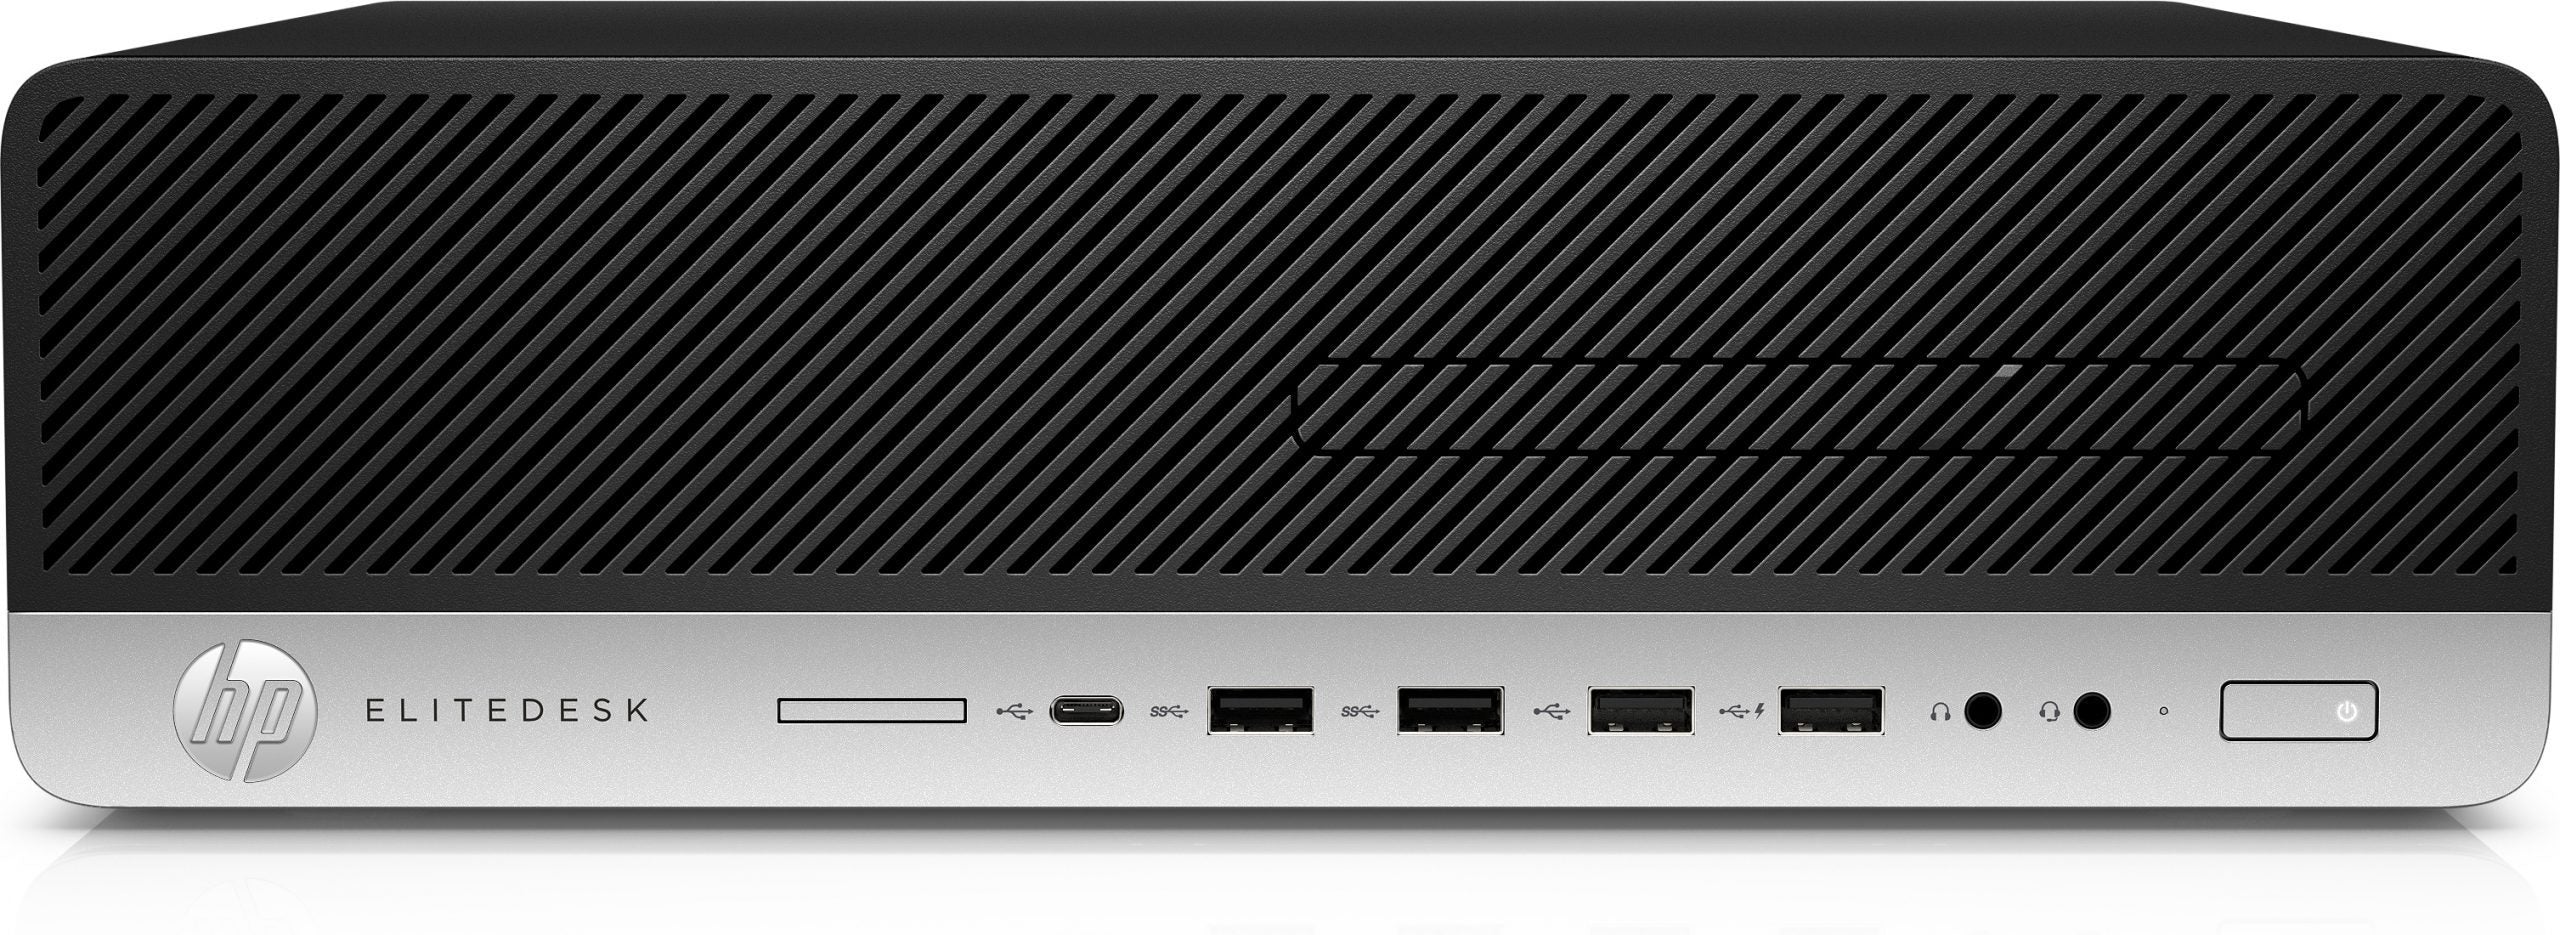 HP EliteDesk 800 G3 SFF | i5-7500 3.4Gh | 8/16Gb Ram | SSD 480Gb + 1Tb SATA | USB-C Windows 10 Pro